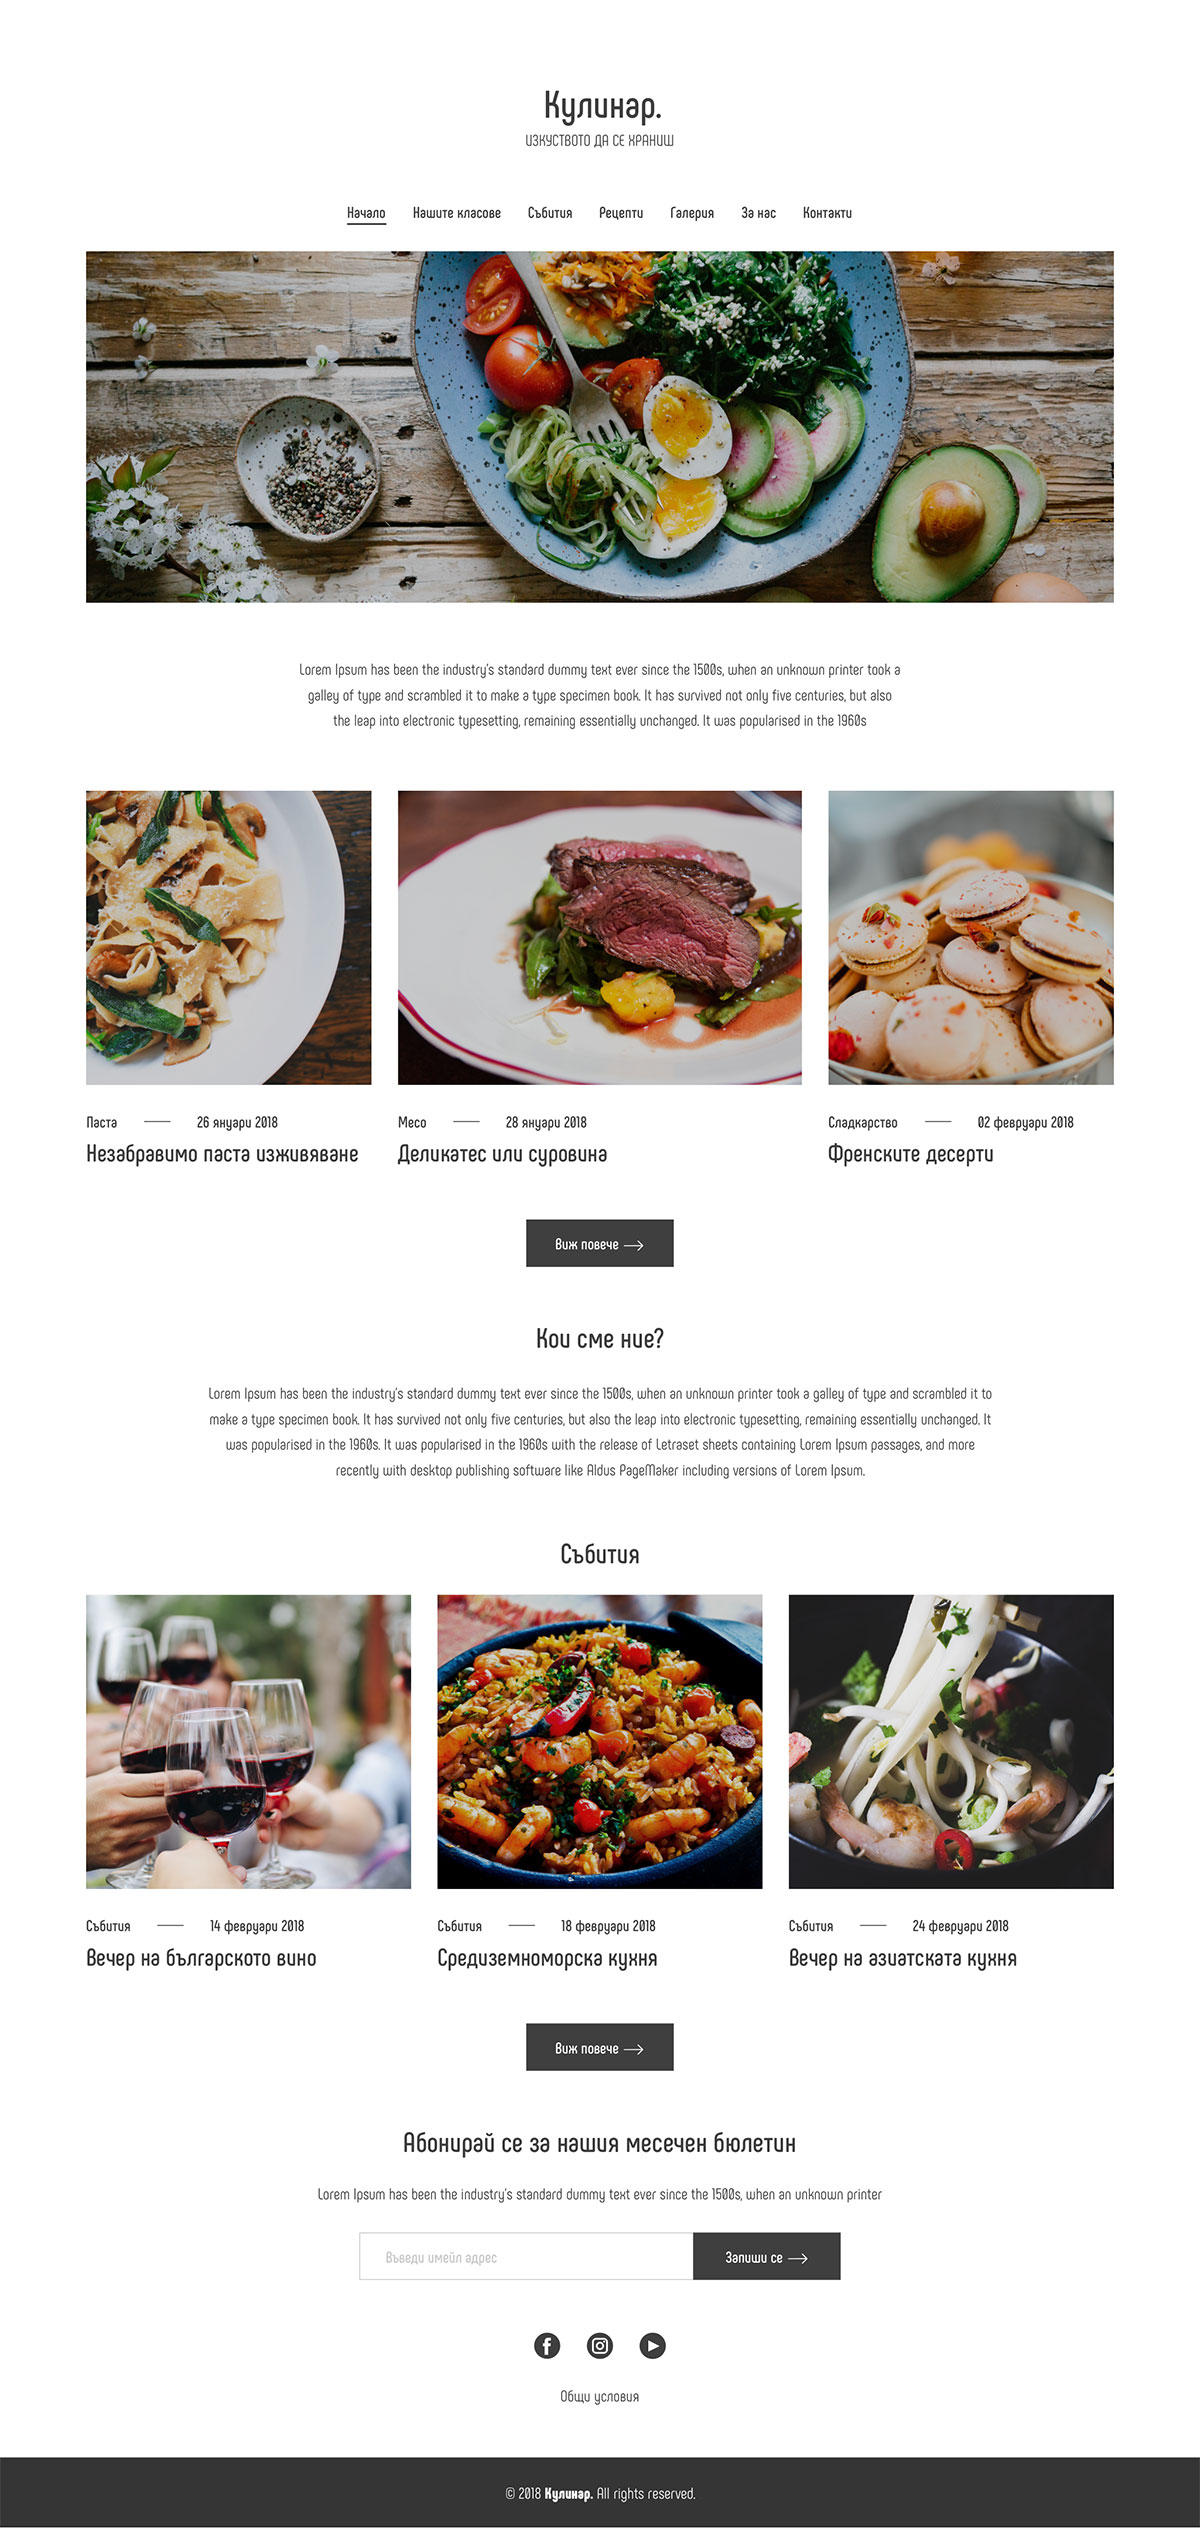 让人垂涎欲滴的12款餐饮类网页设计